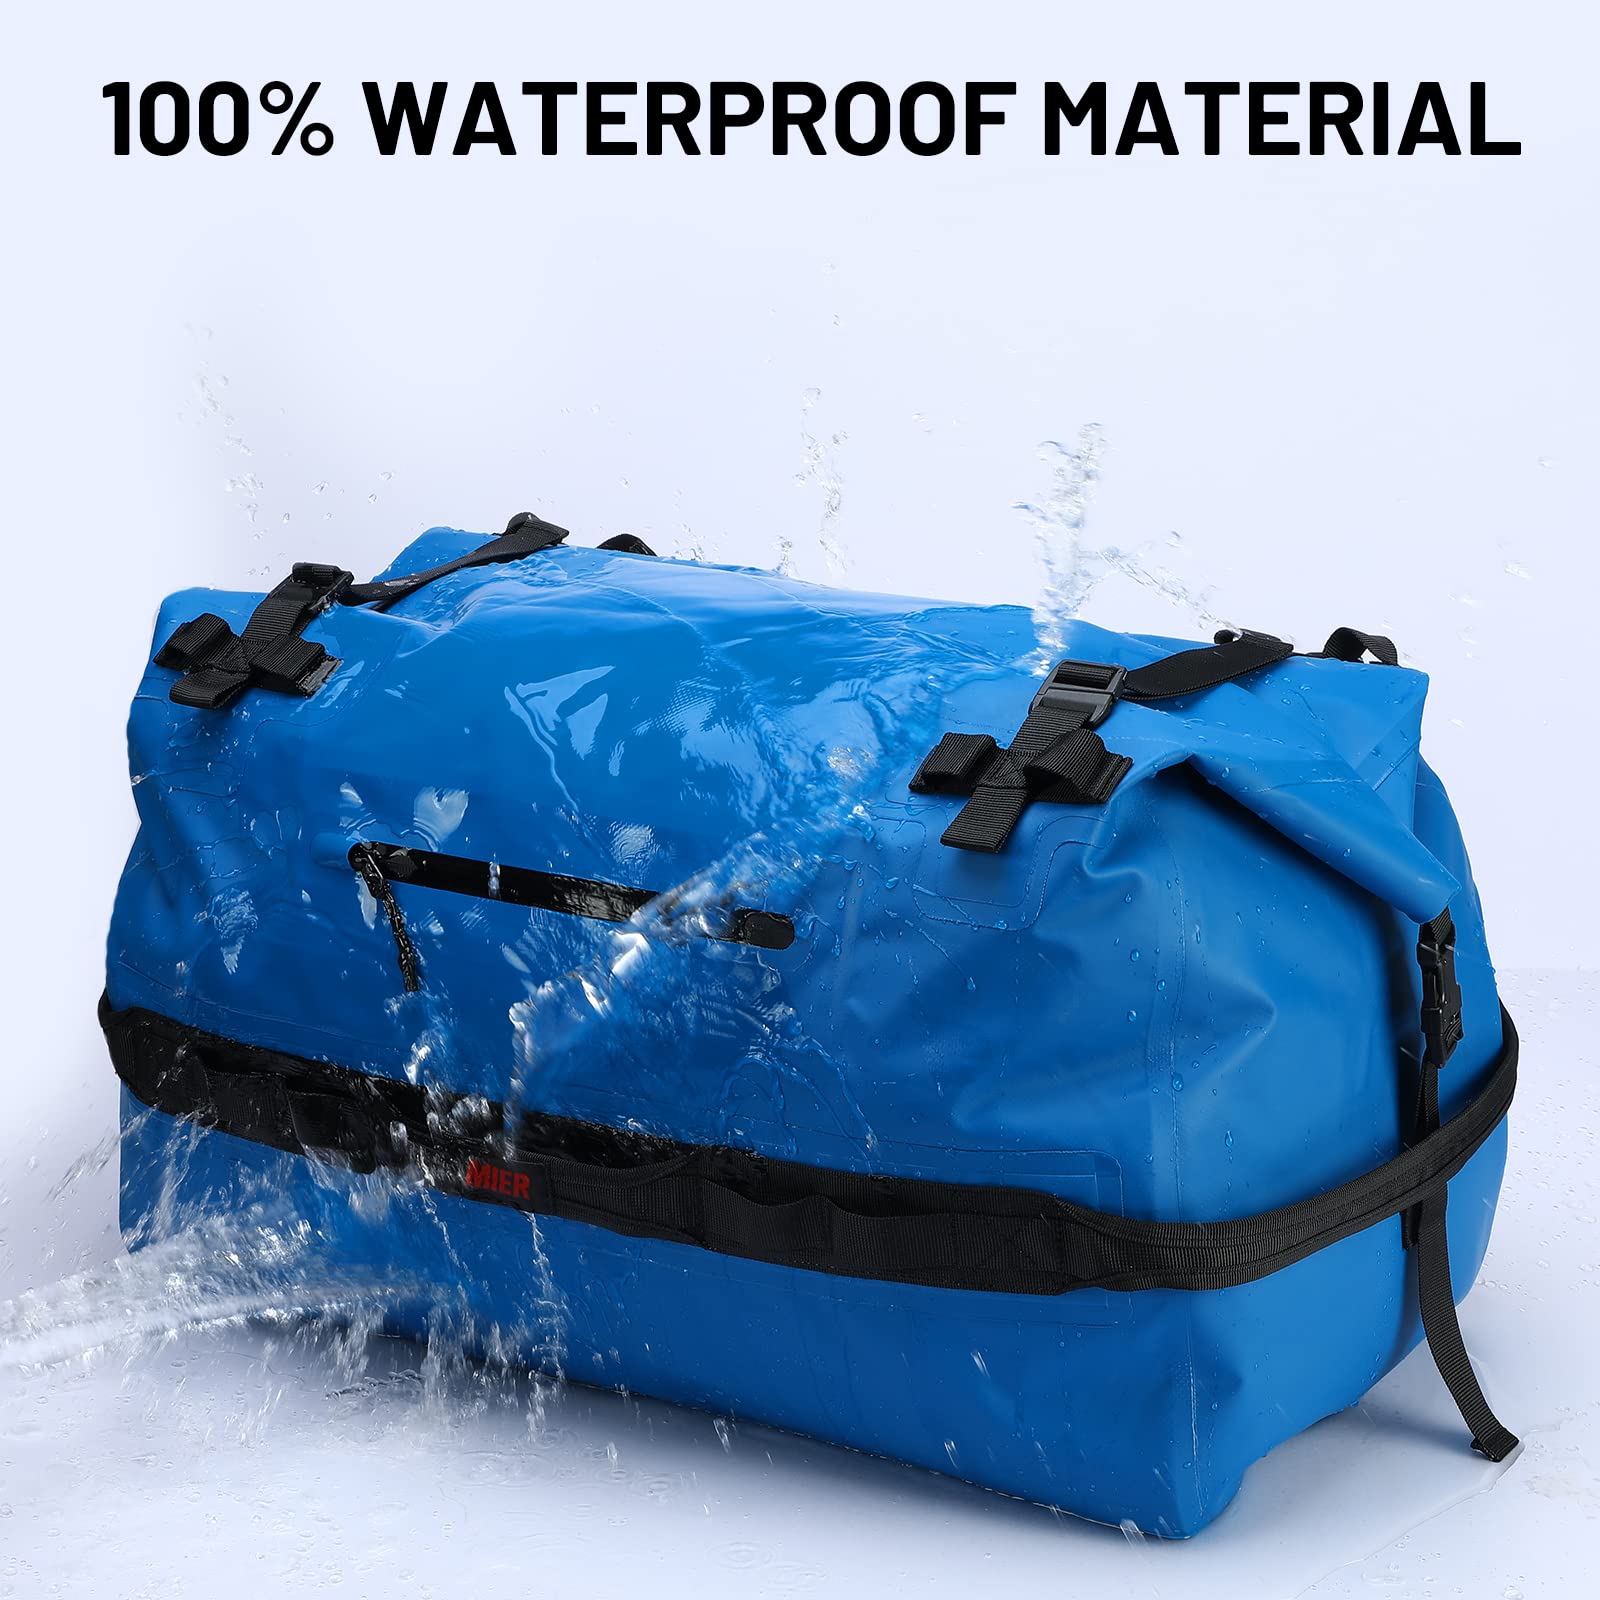 Wet and Dry Waterproof Bag - Black